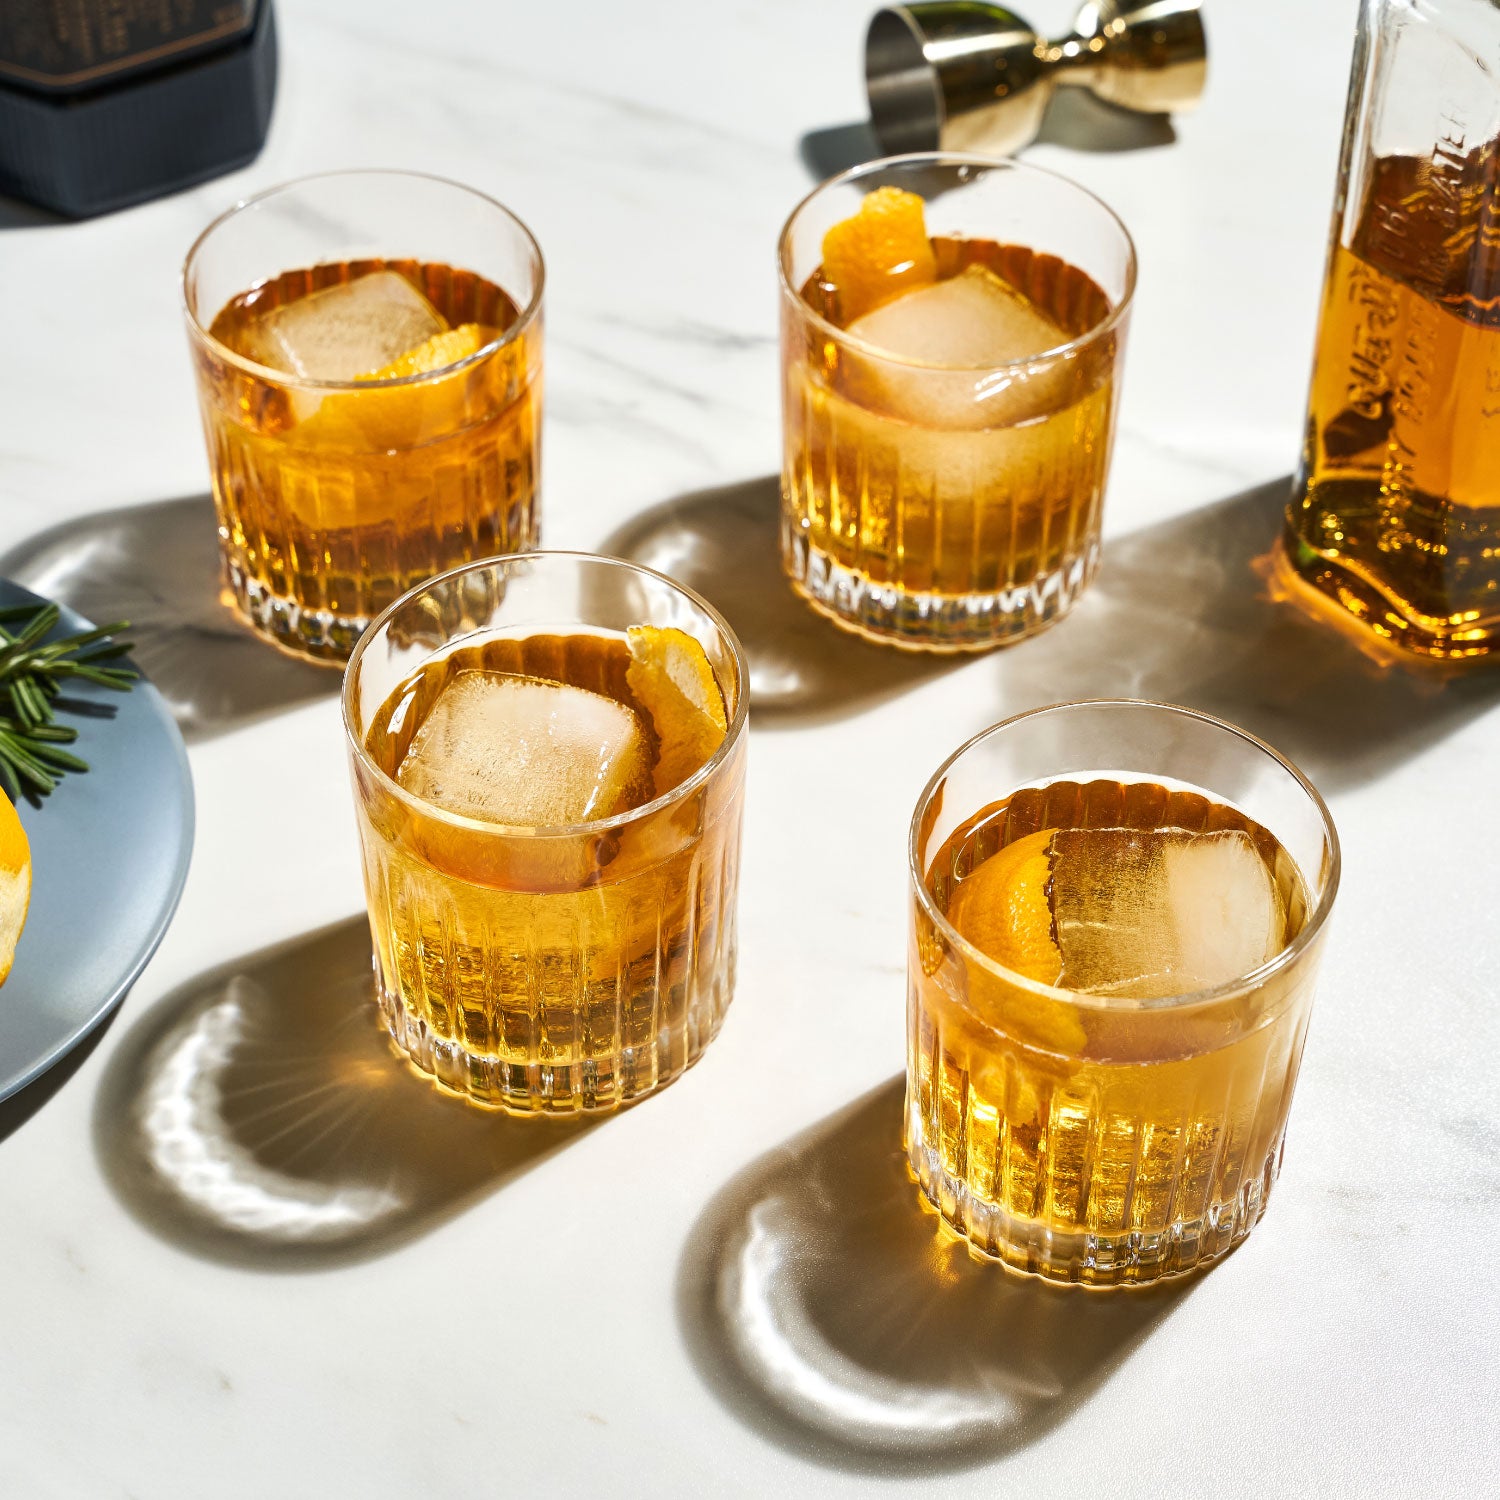 Viski Bodega Glasses - Stackable Drinking Glasses Set - Modern Glassware  for Wine and Cocktails - 7oz Set of 6